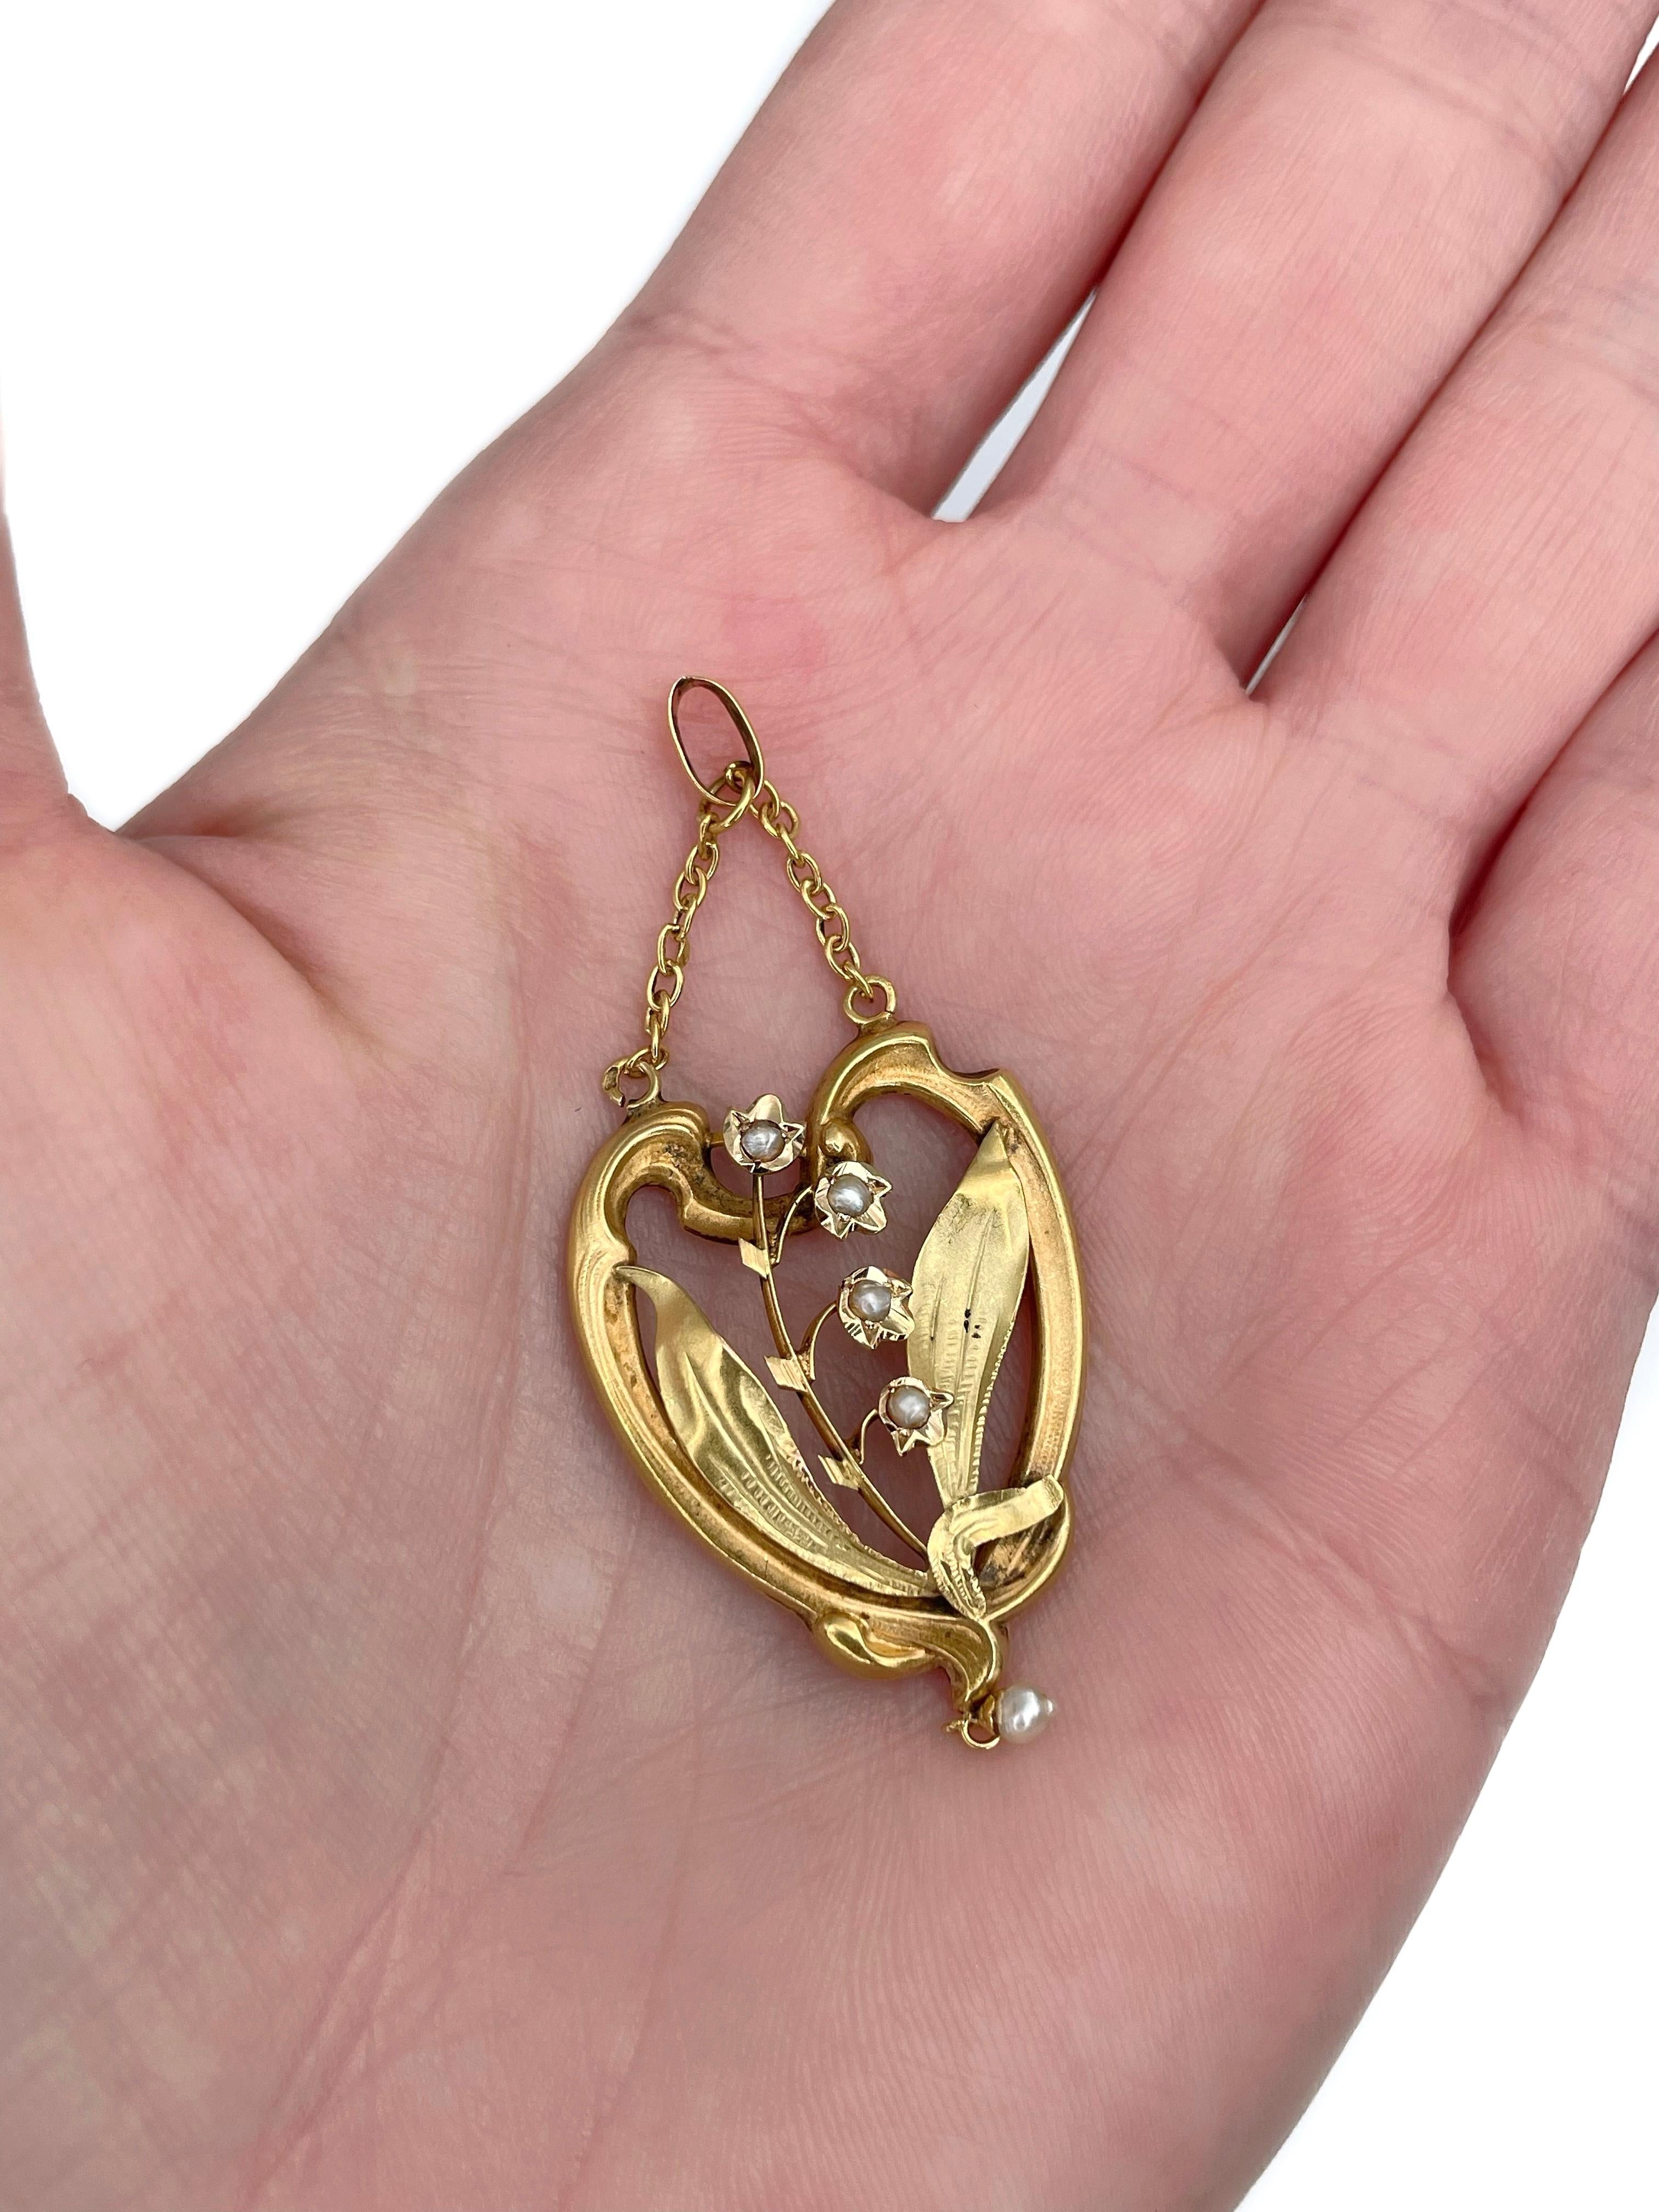 Il s'agit d'un pendentif Art nouveau représentant un muguet. Il est réalisé en or jaune 18 carats et comporte des perles de rocaille. Circa 1900. 

Poids : 2,26 g
Taille : 5.8x2.3cm

---

Si vous avez des questions, n'hésitez pas à les poser. Nous